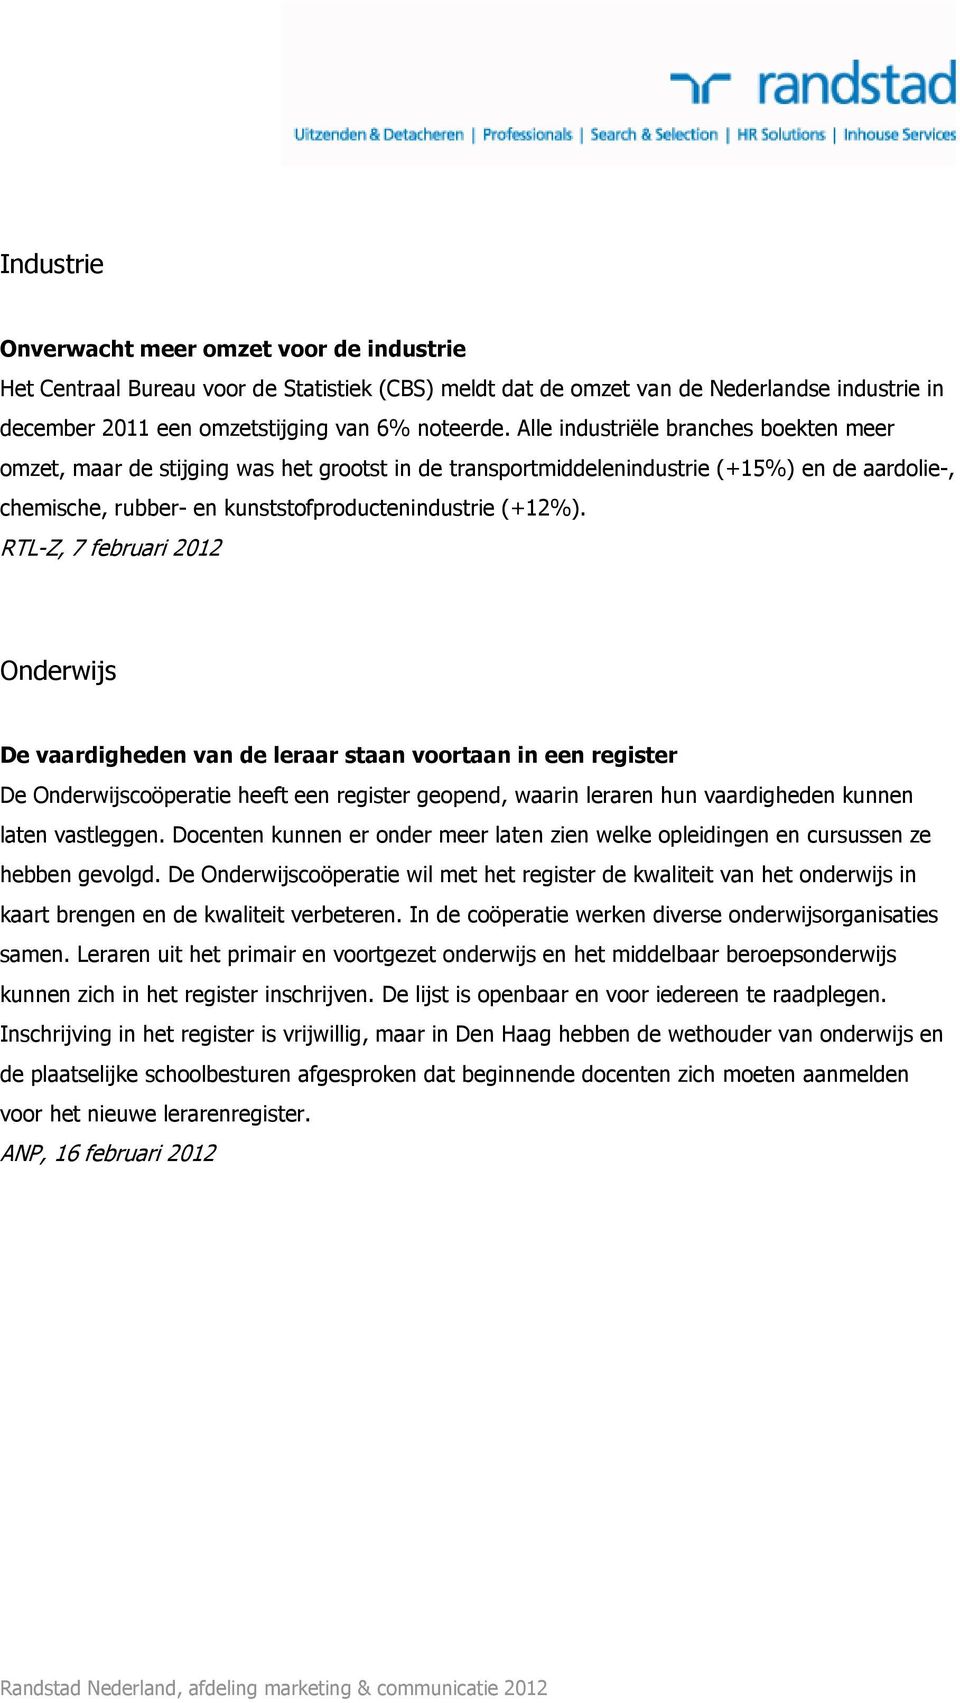 RTL-Z, 7 februari 2012 Onderwijs De vaardigheden van de leraar staan voortaan in een register De Onderwijscoöperatie heeft een register geopend, waarin leraren hun vaardigheden kunnen laten